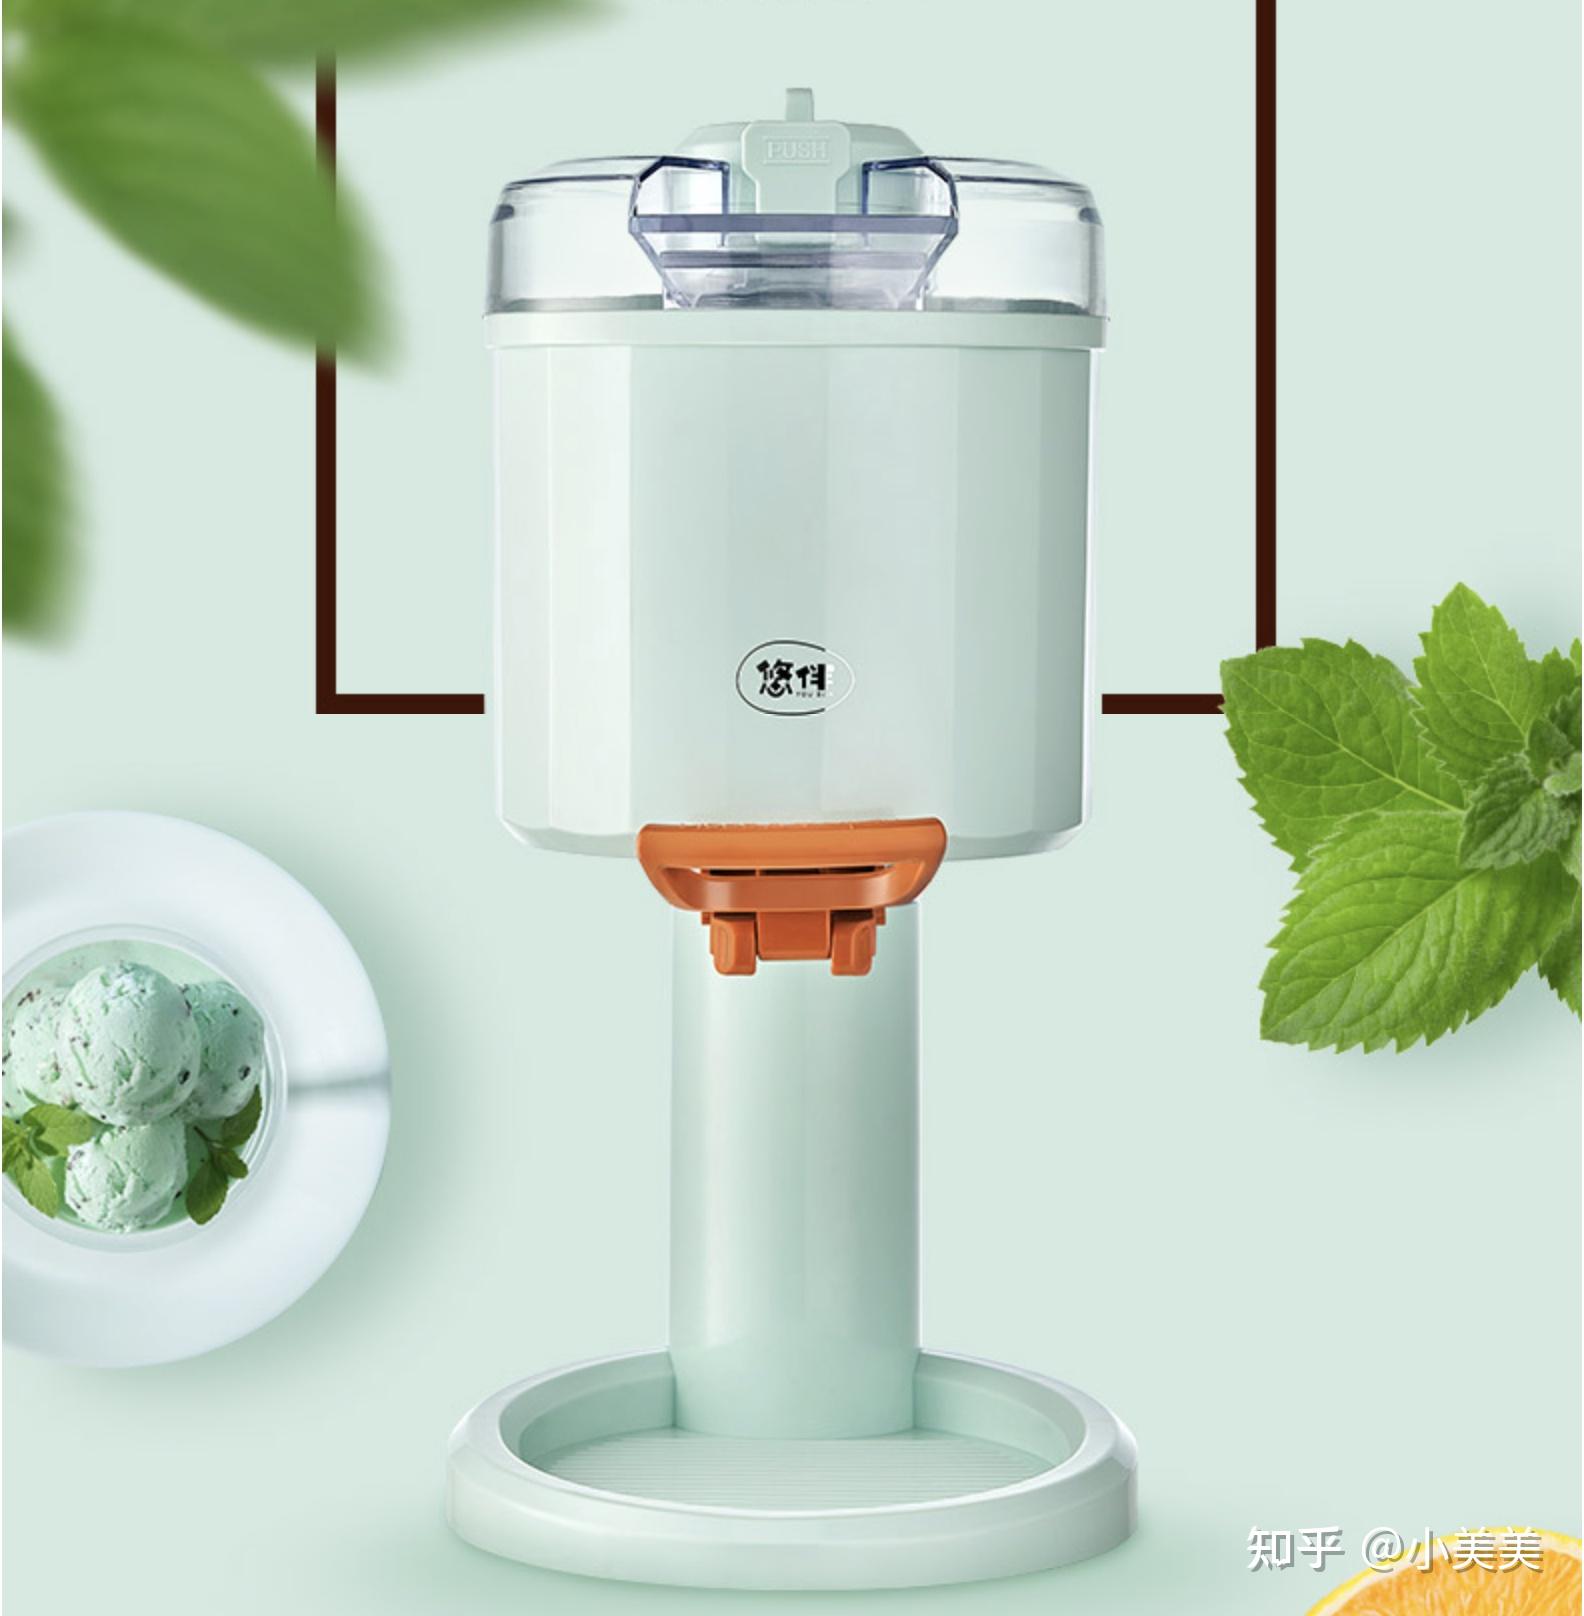 YB-20冰淇淋机商用移动，全自动硬冰激凌机器 - 金利生 (中国 广东省 生产商) - 食品饮料和粮食加工机械 - 工业设备 产品 「自助贸易」